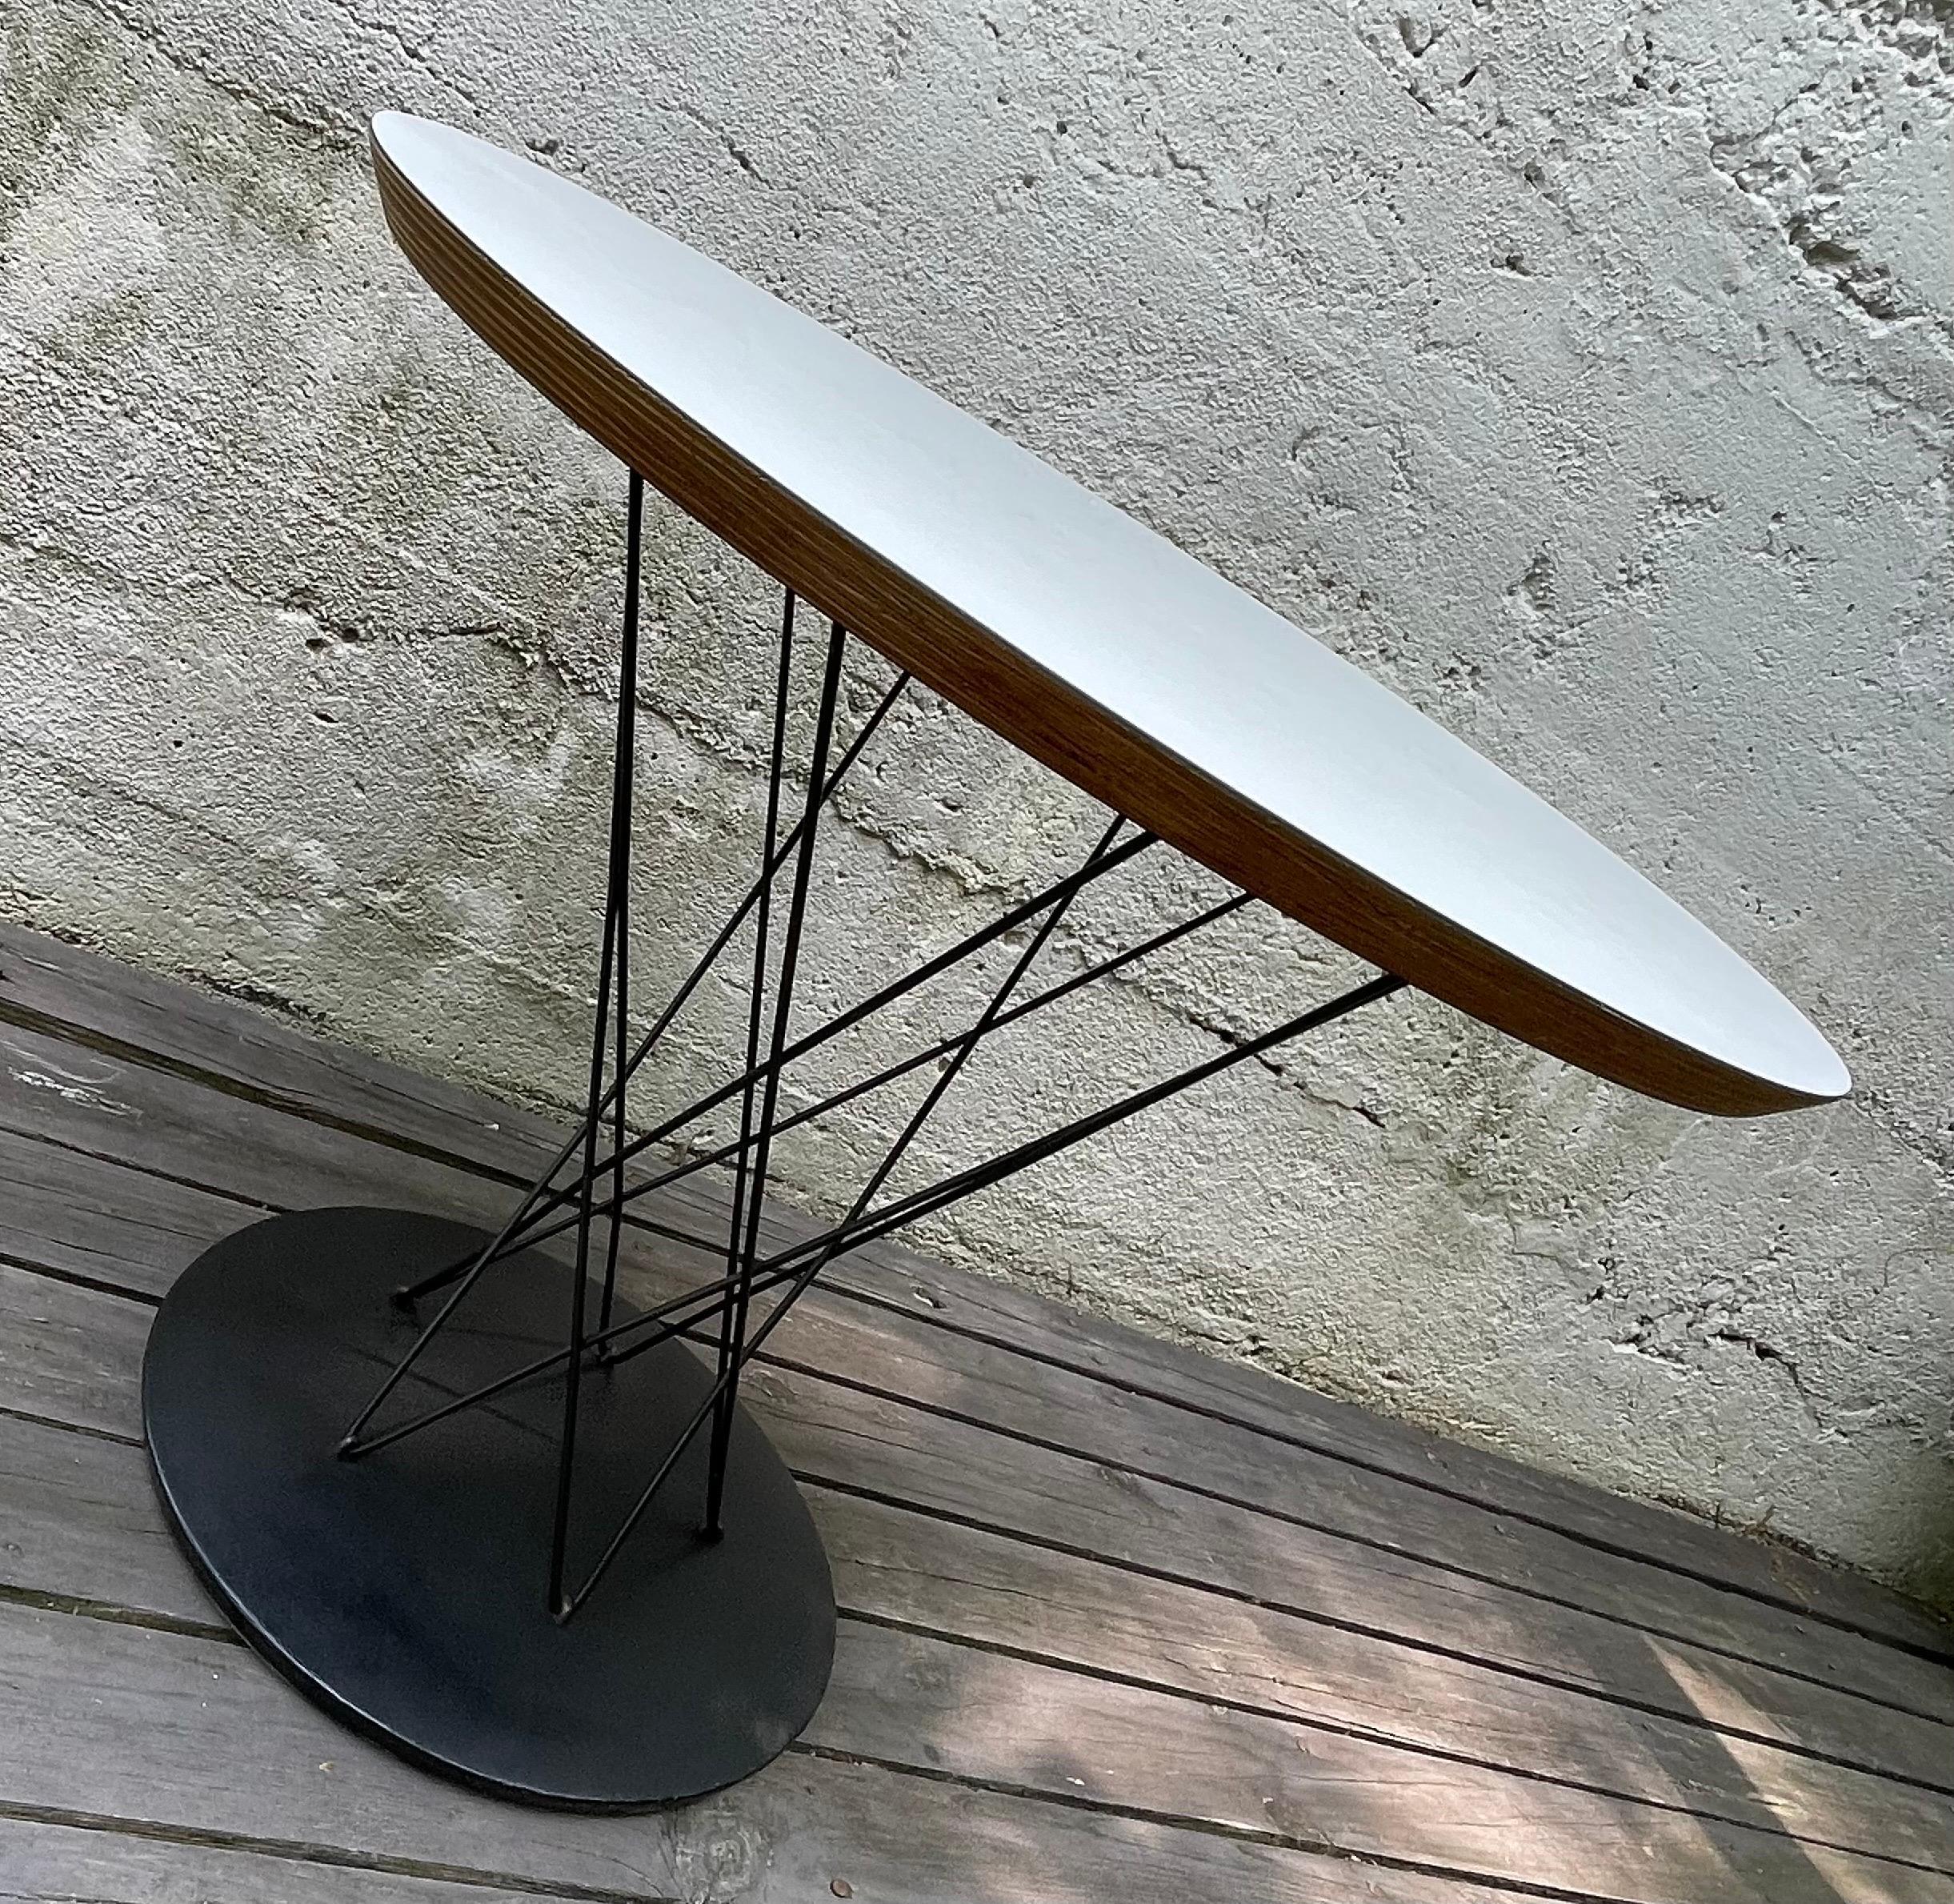 Table d'appoint Isamu Noguchi Cyclone, modèle 87, circa 1970 pour Knoll International. État d'origine, nettoyé professionnellement.

Isamu Noguchi était un sculpteur, un designer de meubles et un architecte paysagiste américain de renom. Tout au